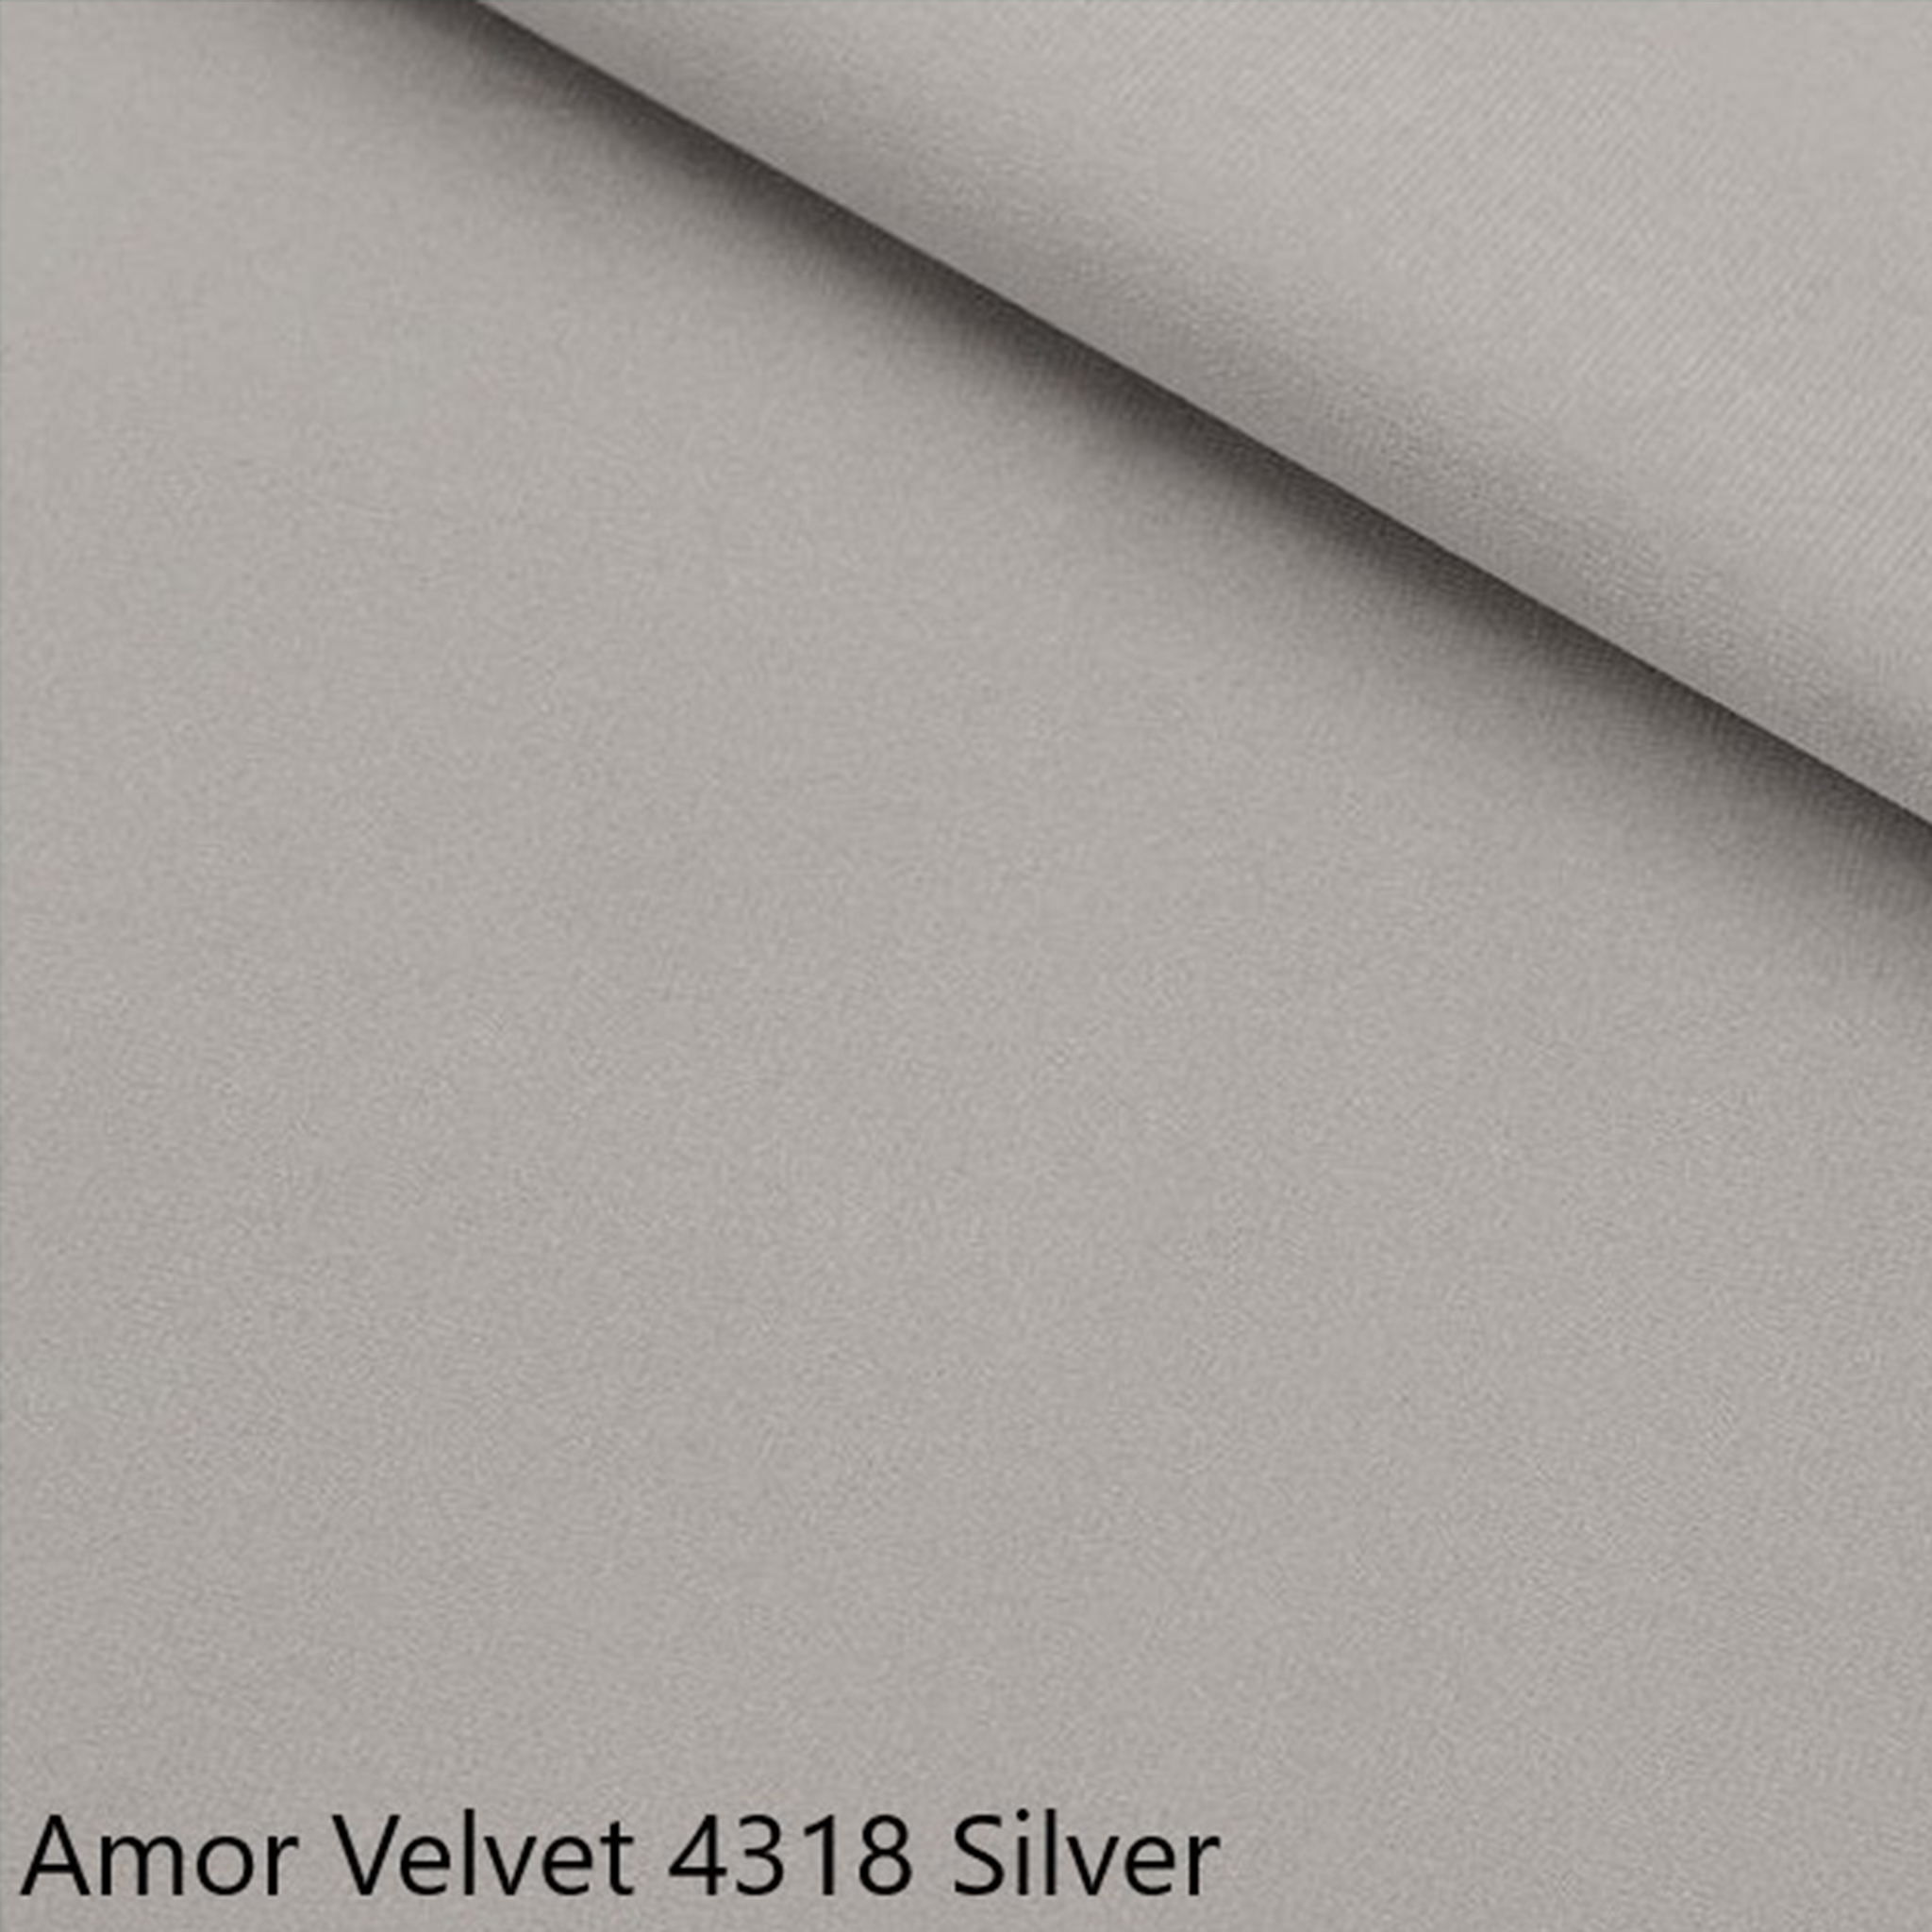 GR. 2 Amor Velvet 4318